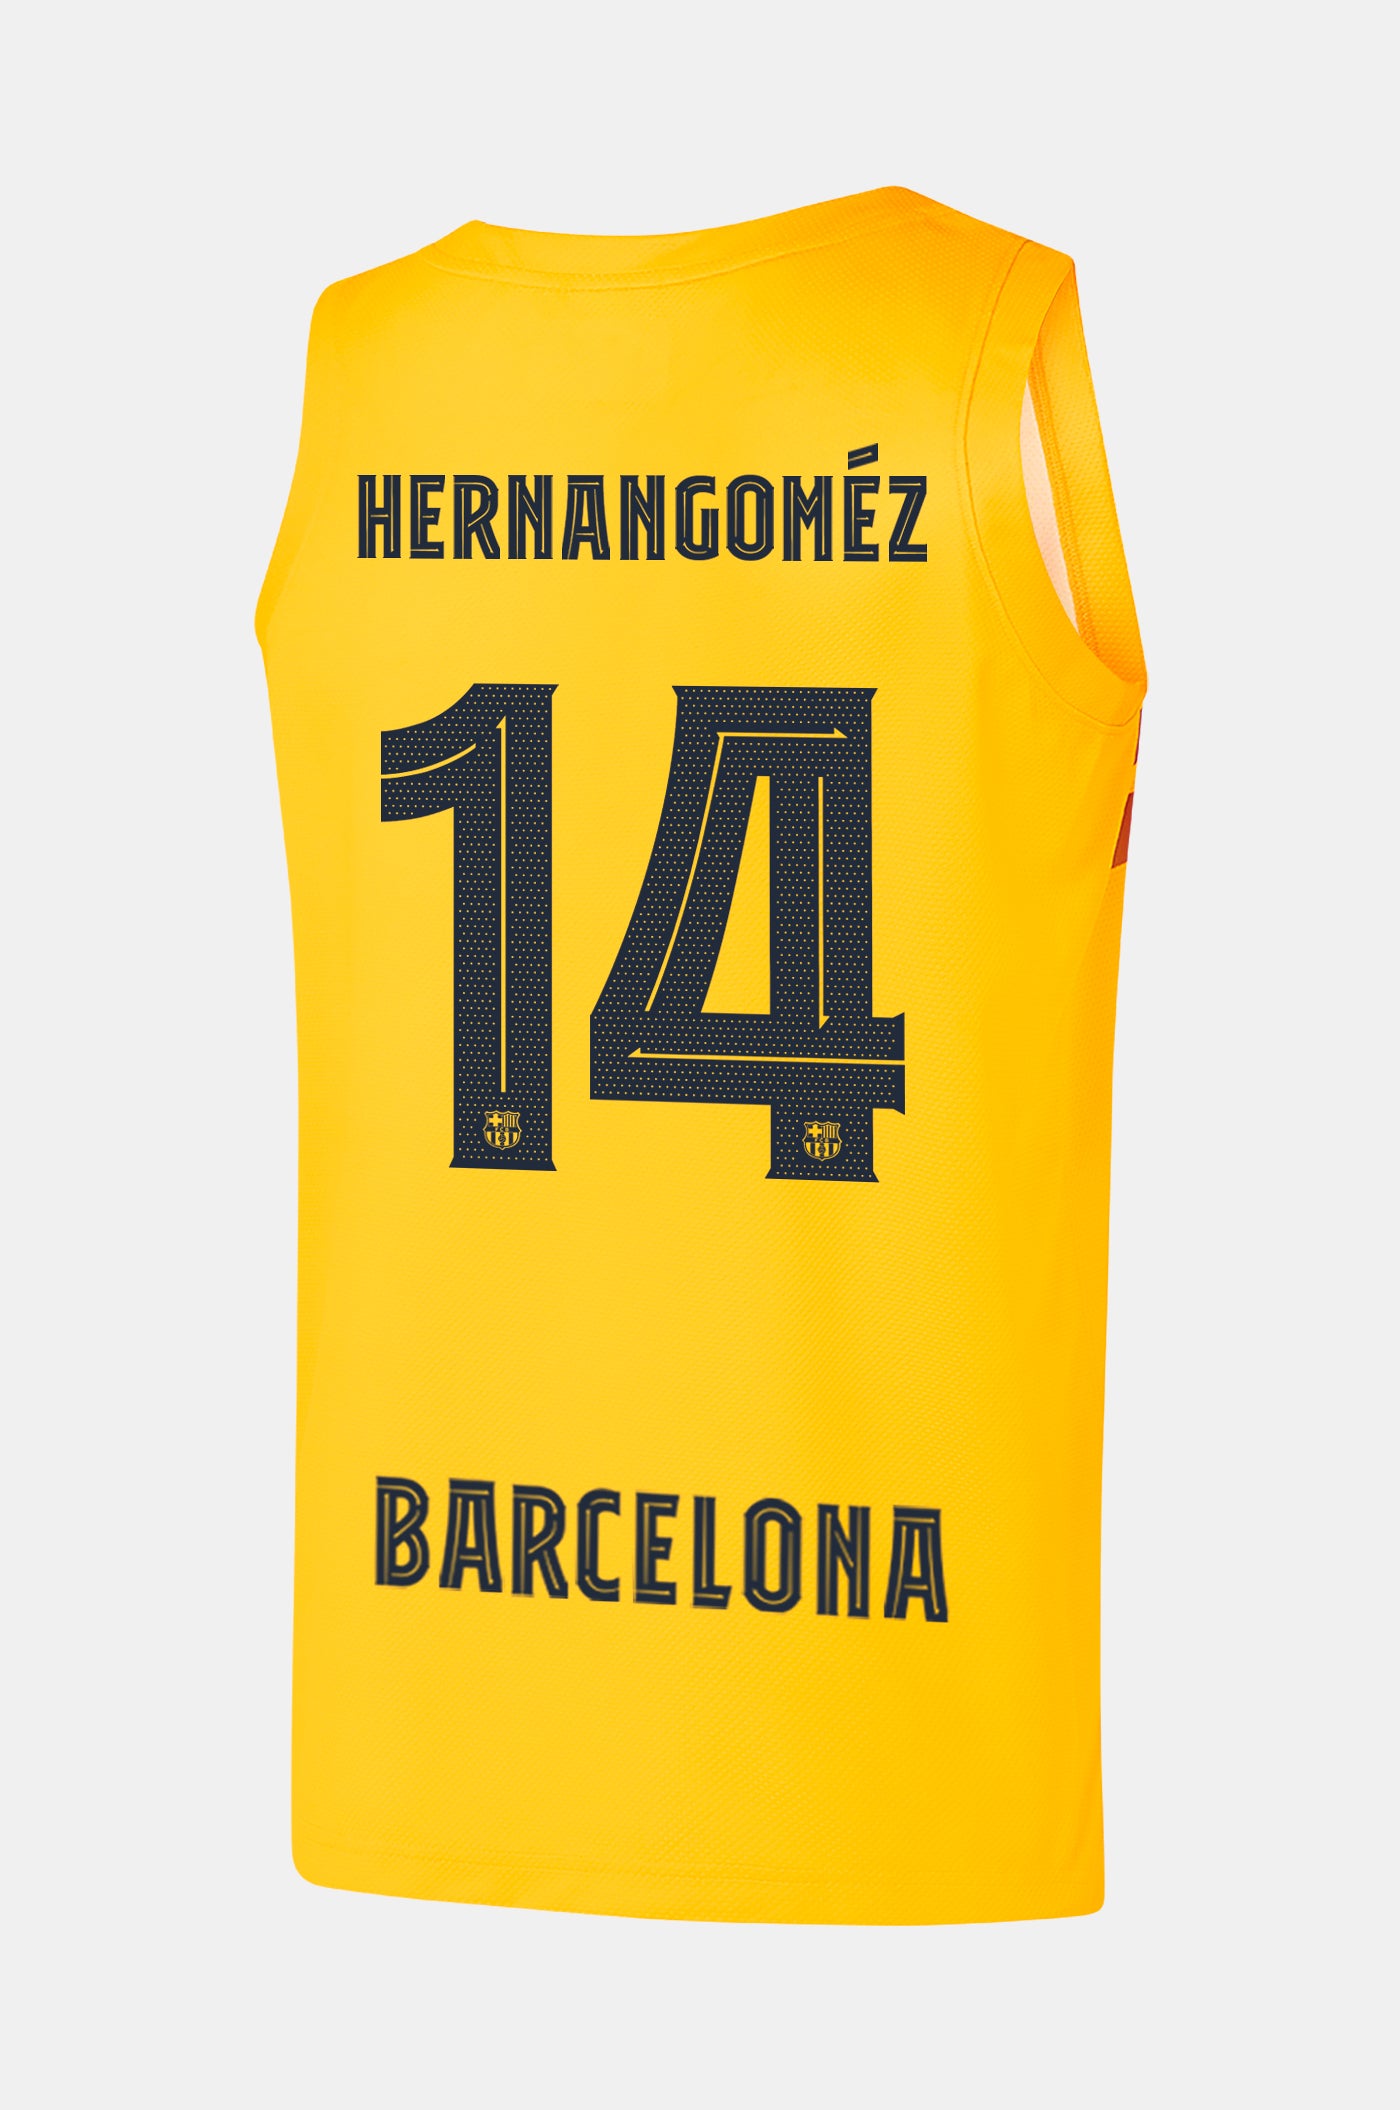 EUROLEAGUE - Samarreta bàsquet 4t equipament FC Barcelona 22/23 - HERNANGÓMEZ